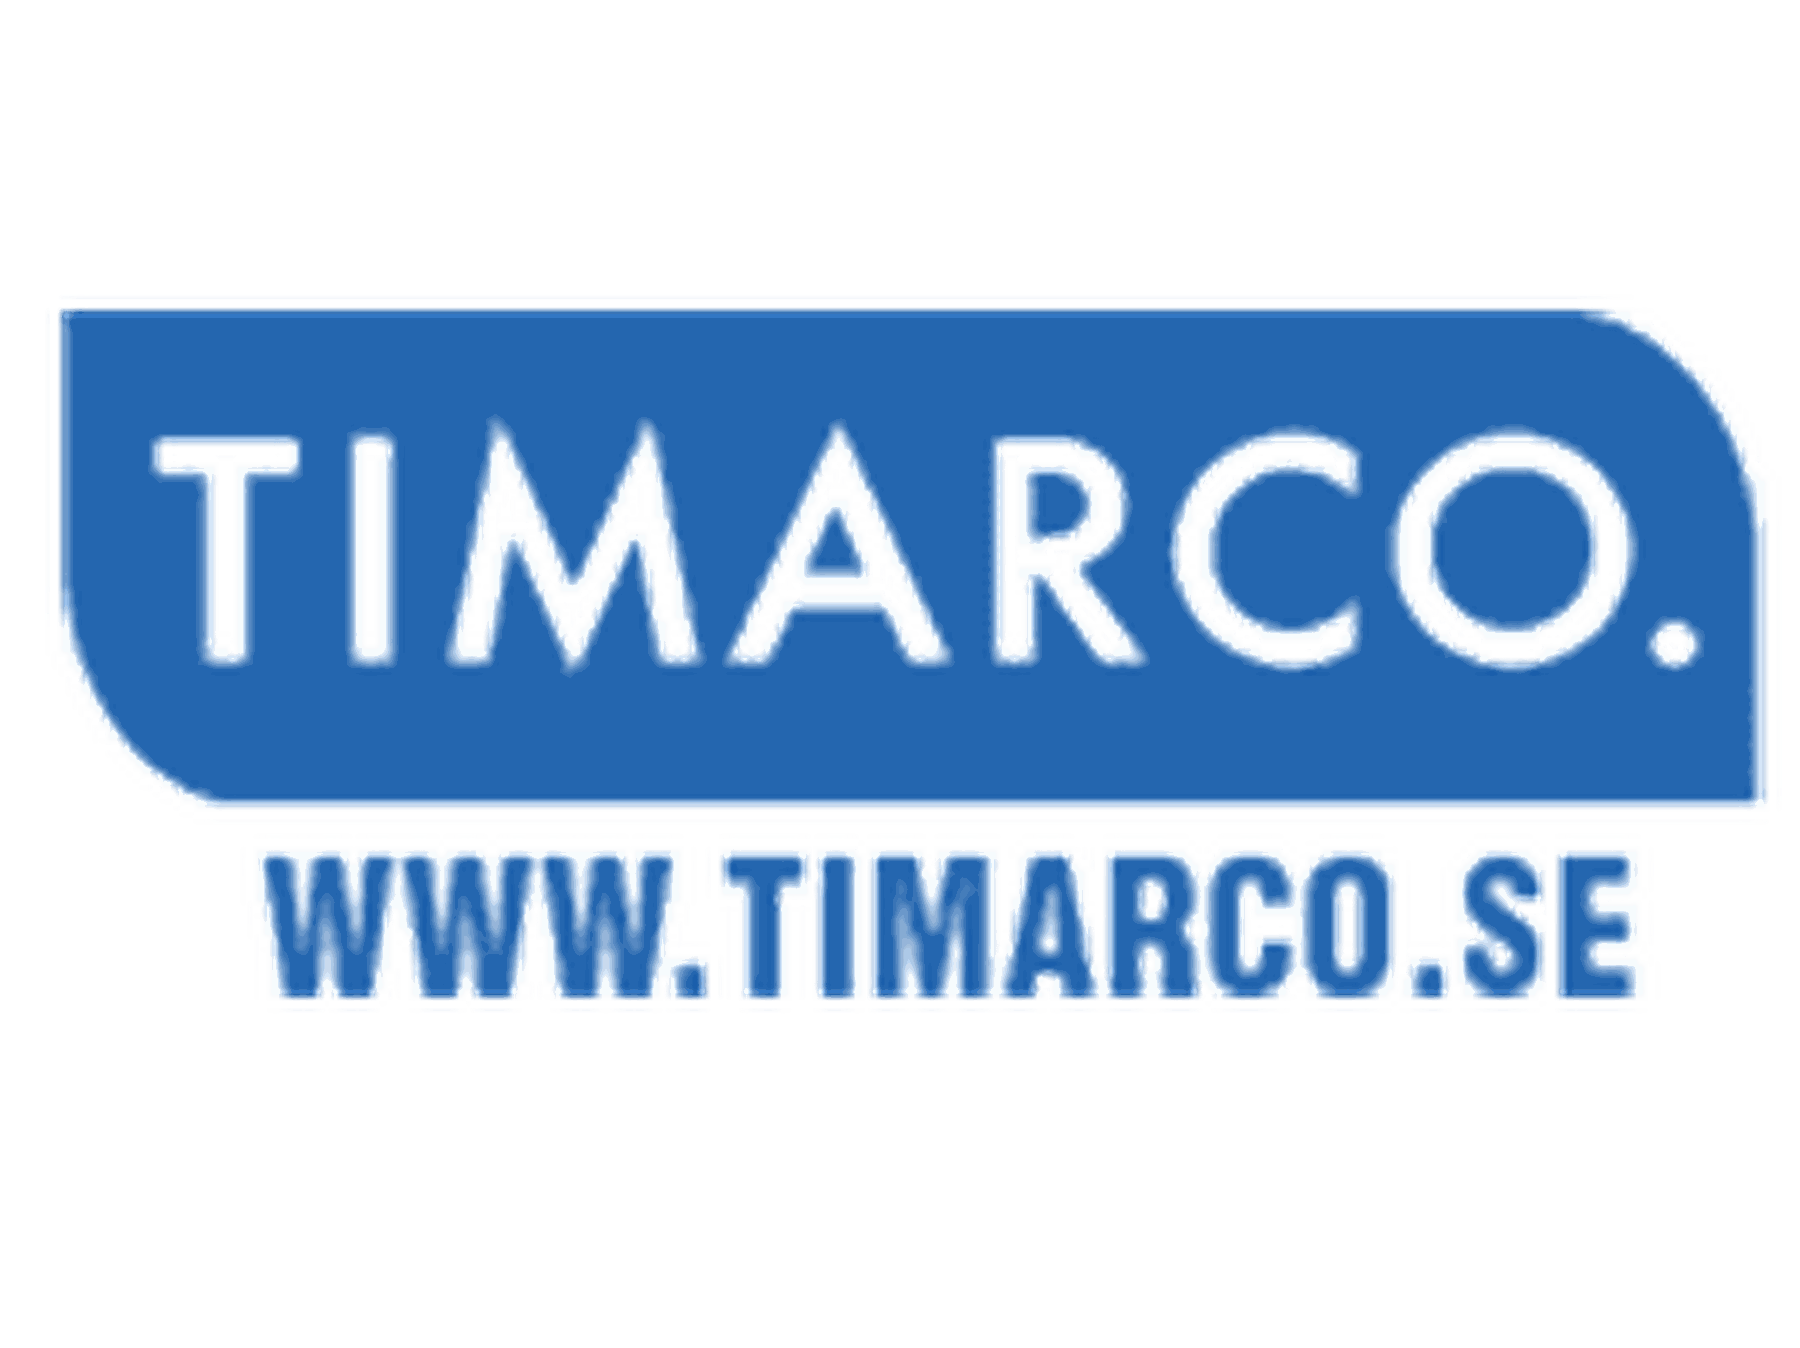 Timarco rabattkod